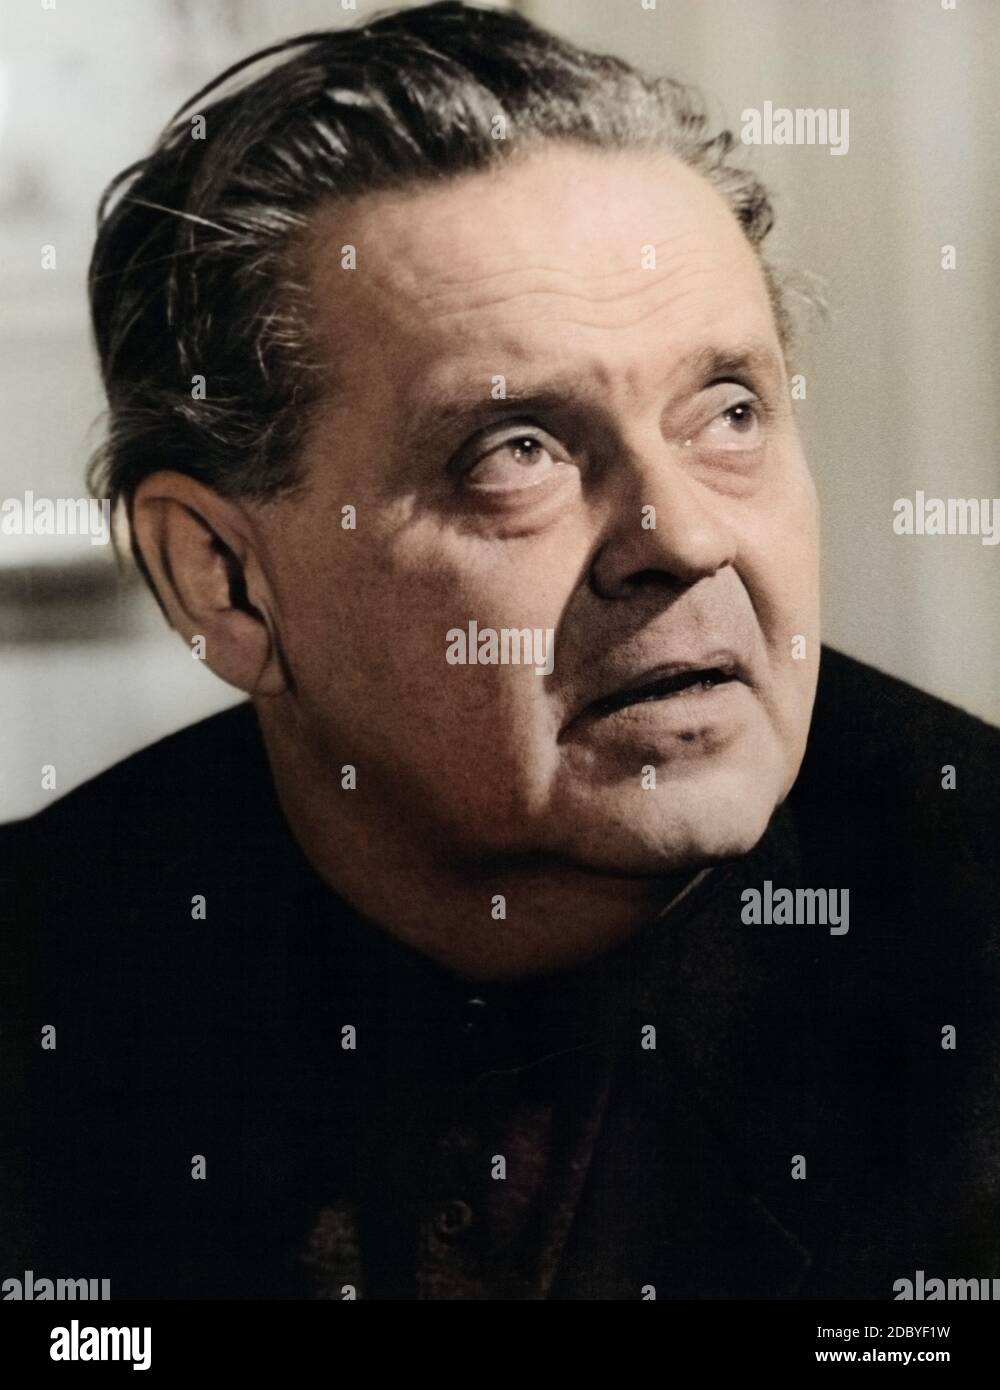 Geza von Radvany, ungarischer Regisseur und Drehbuchautor, Deutschland 1950er Jahre. Hungarian movie director and screenwriter Geza von Radvany, Germany 1950s. Stock Photo